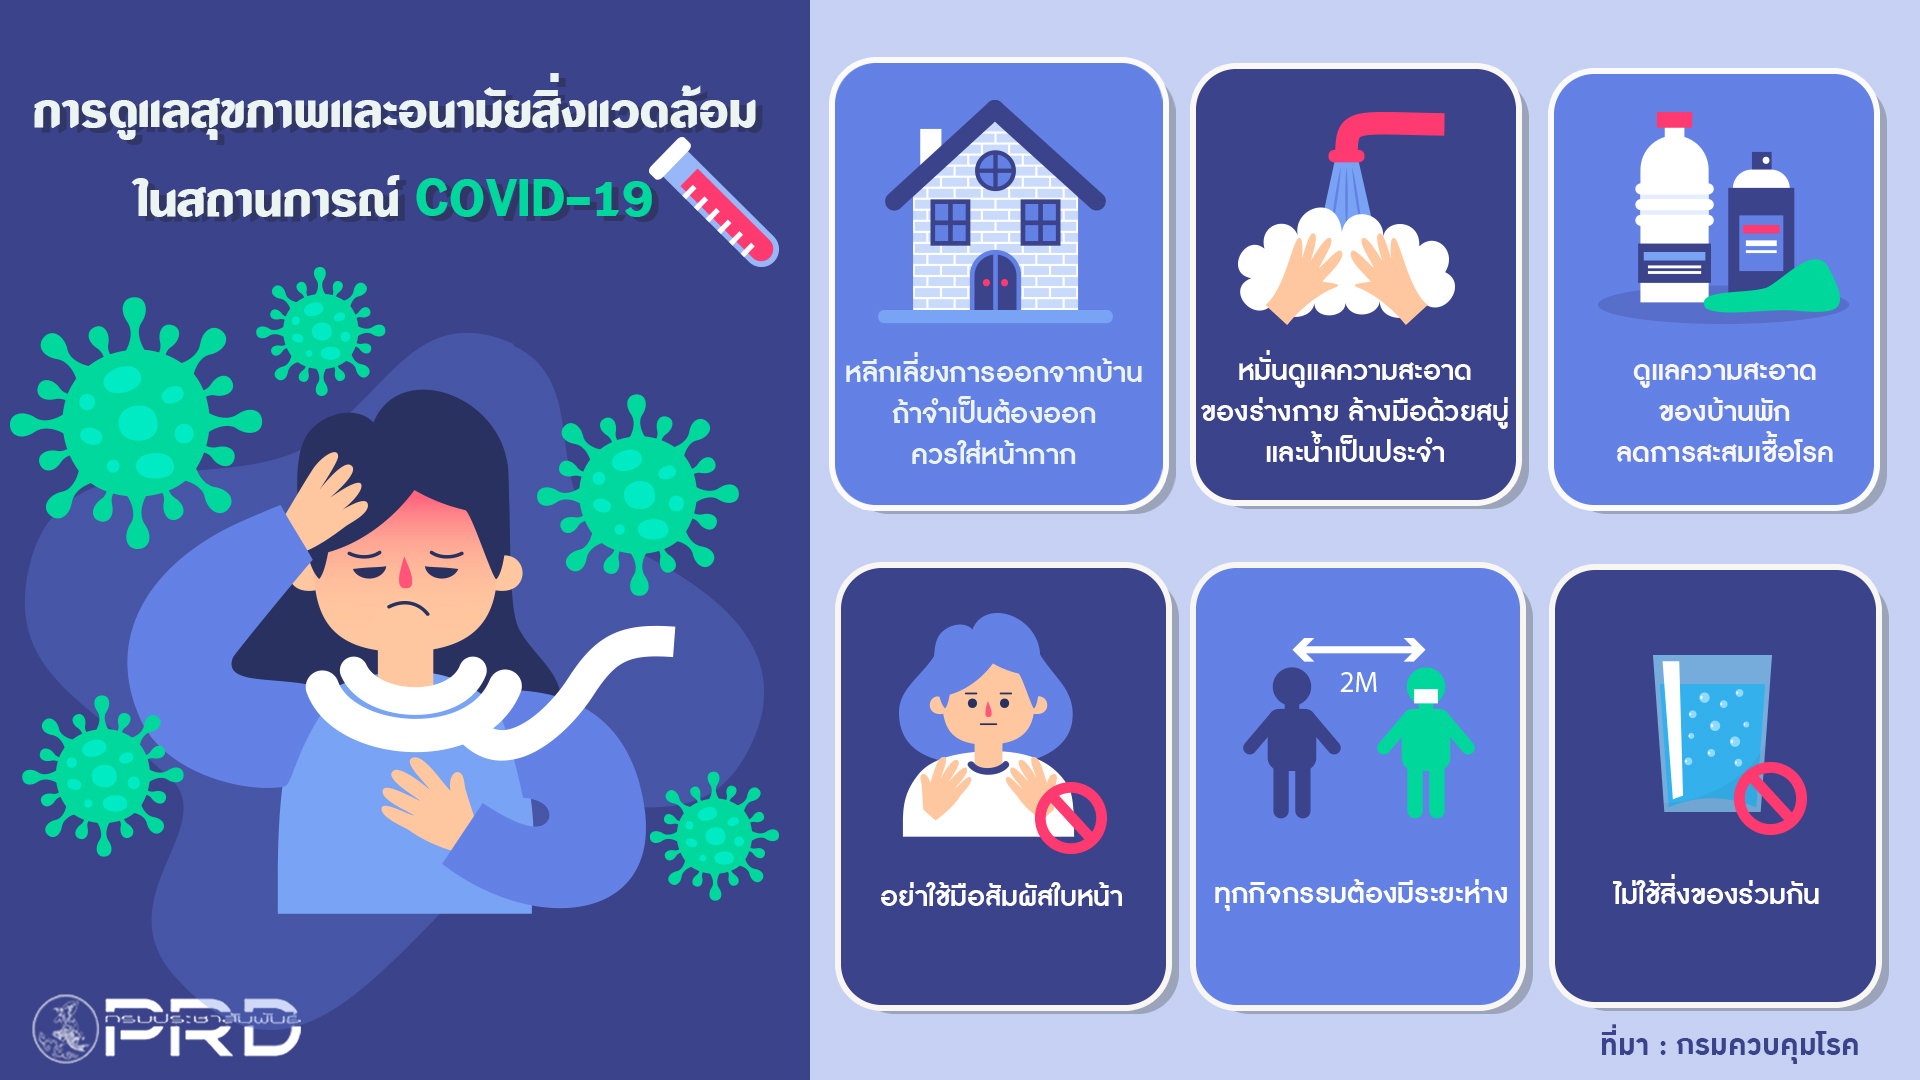 การดูแลสุขภาพและอนามัยสิ่งแวดล้อม ในสถานการณ์ COVID-19 (ตัวอย่างข้อมูล)